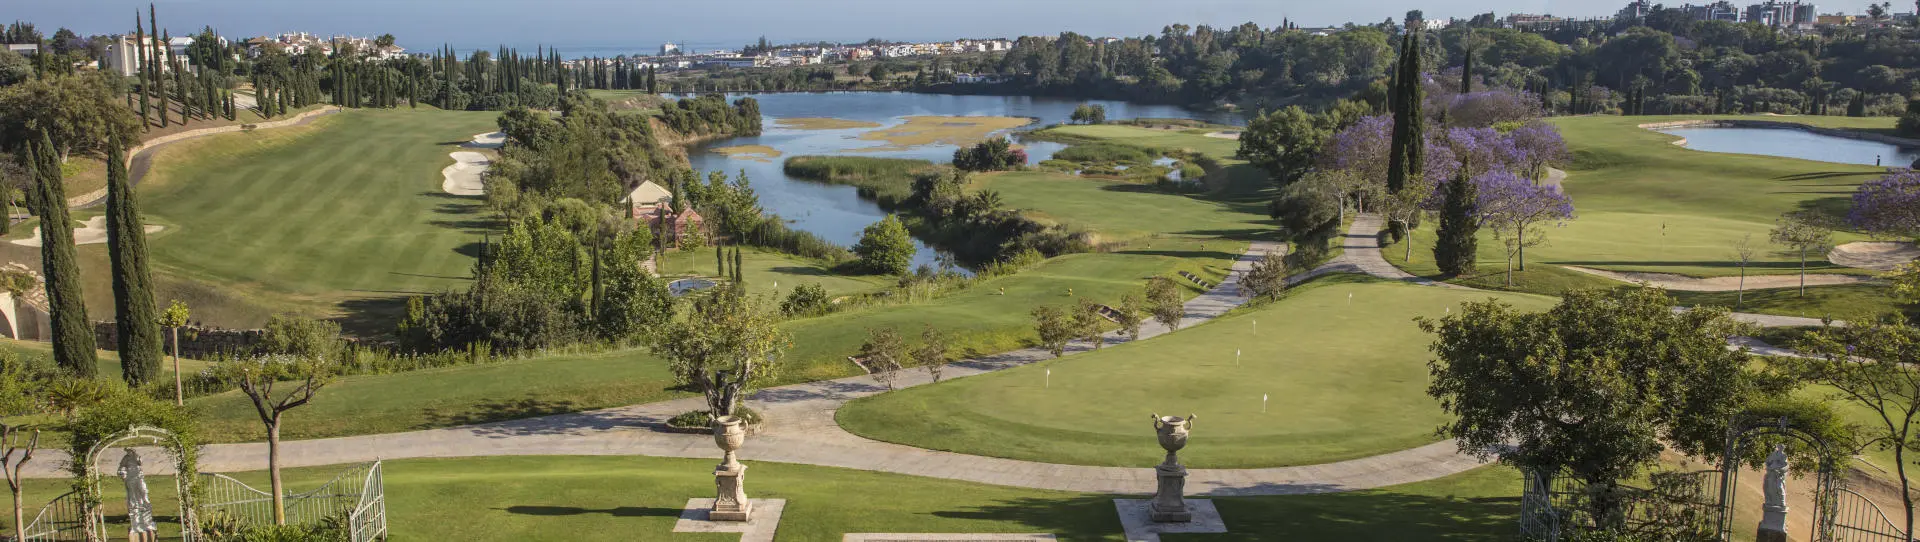 Spain golf courses - Flamingos Golf at Villa Padierna - Photo 2